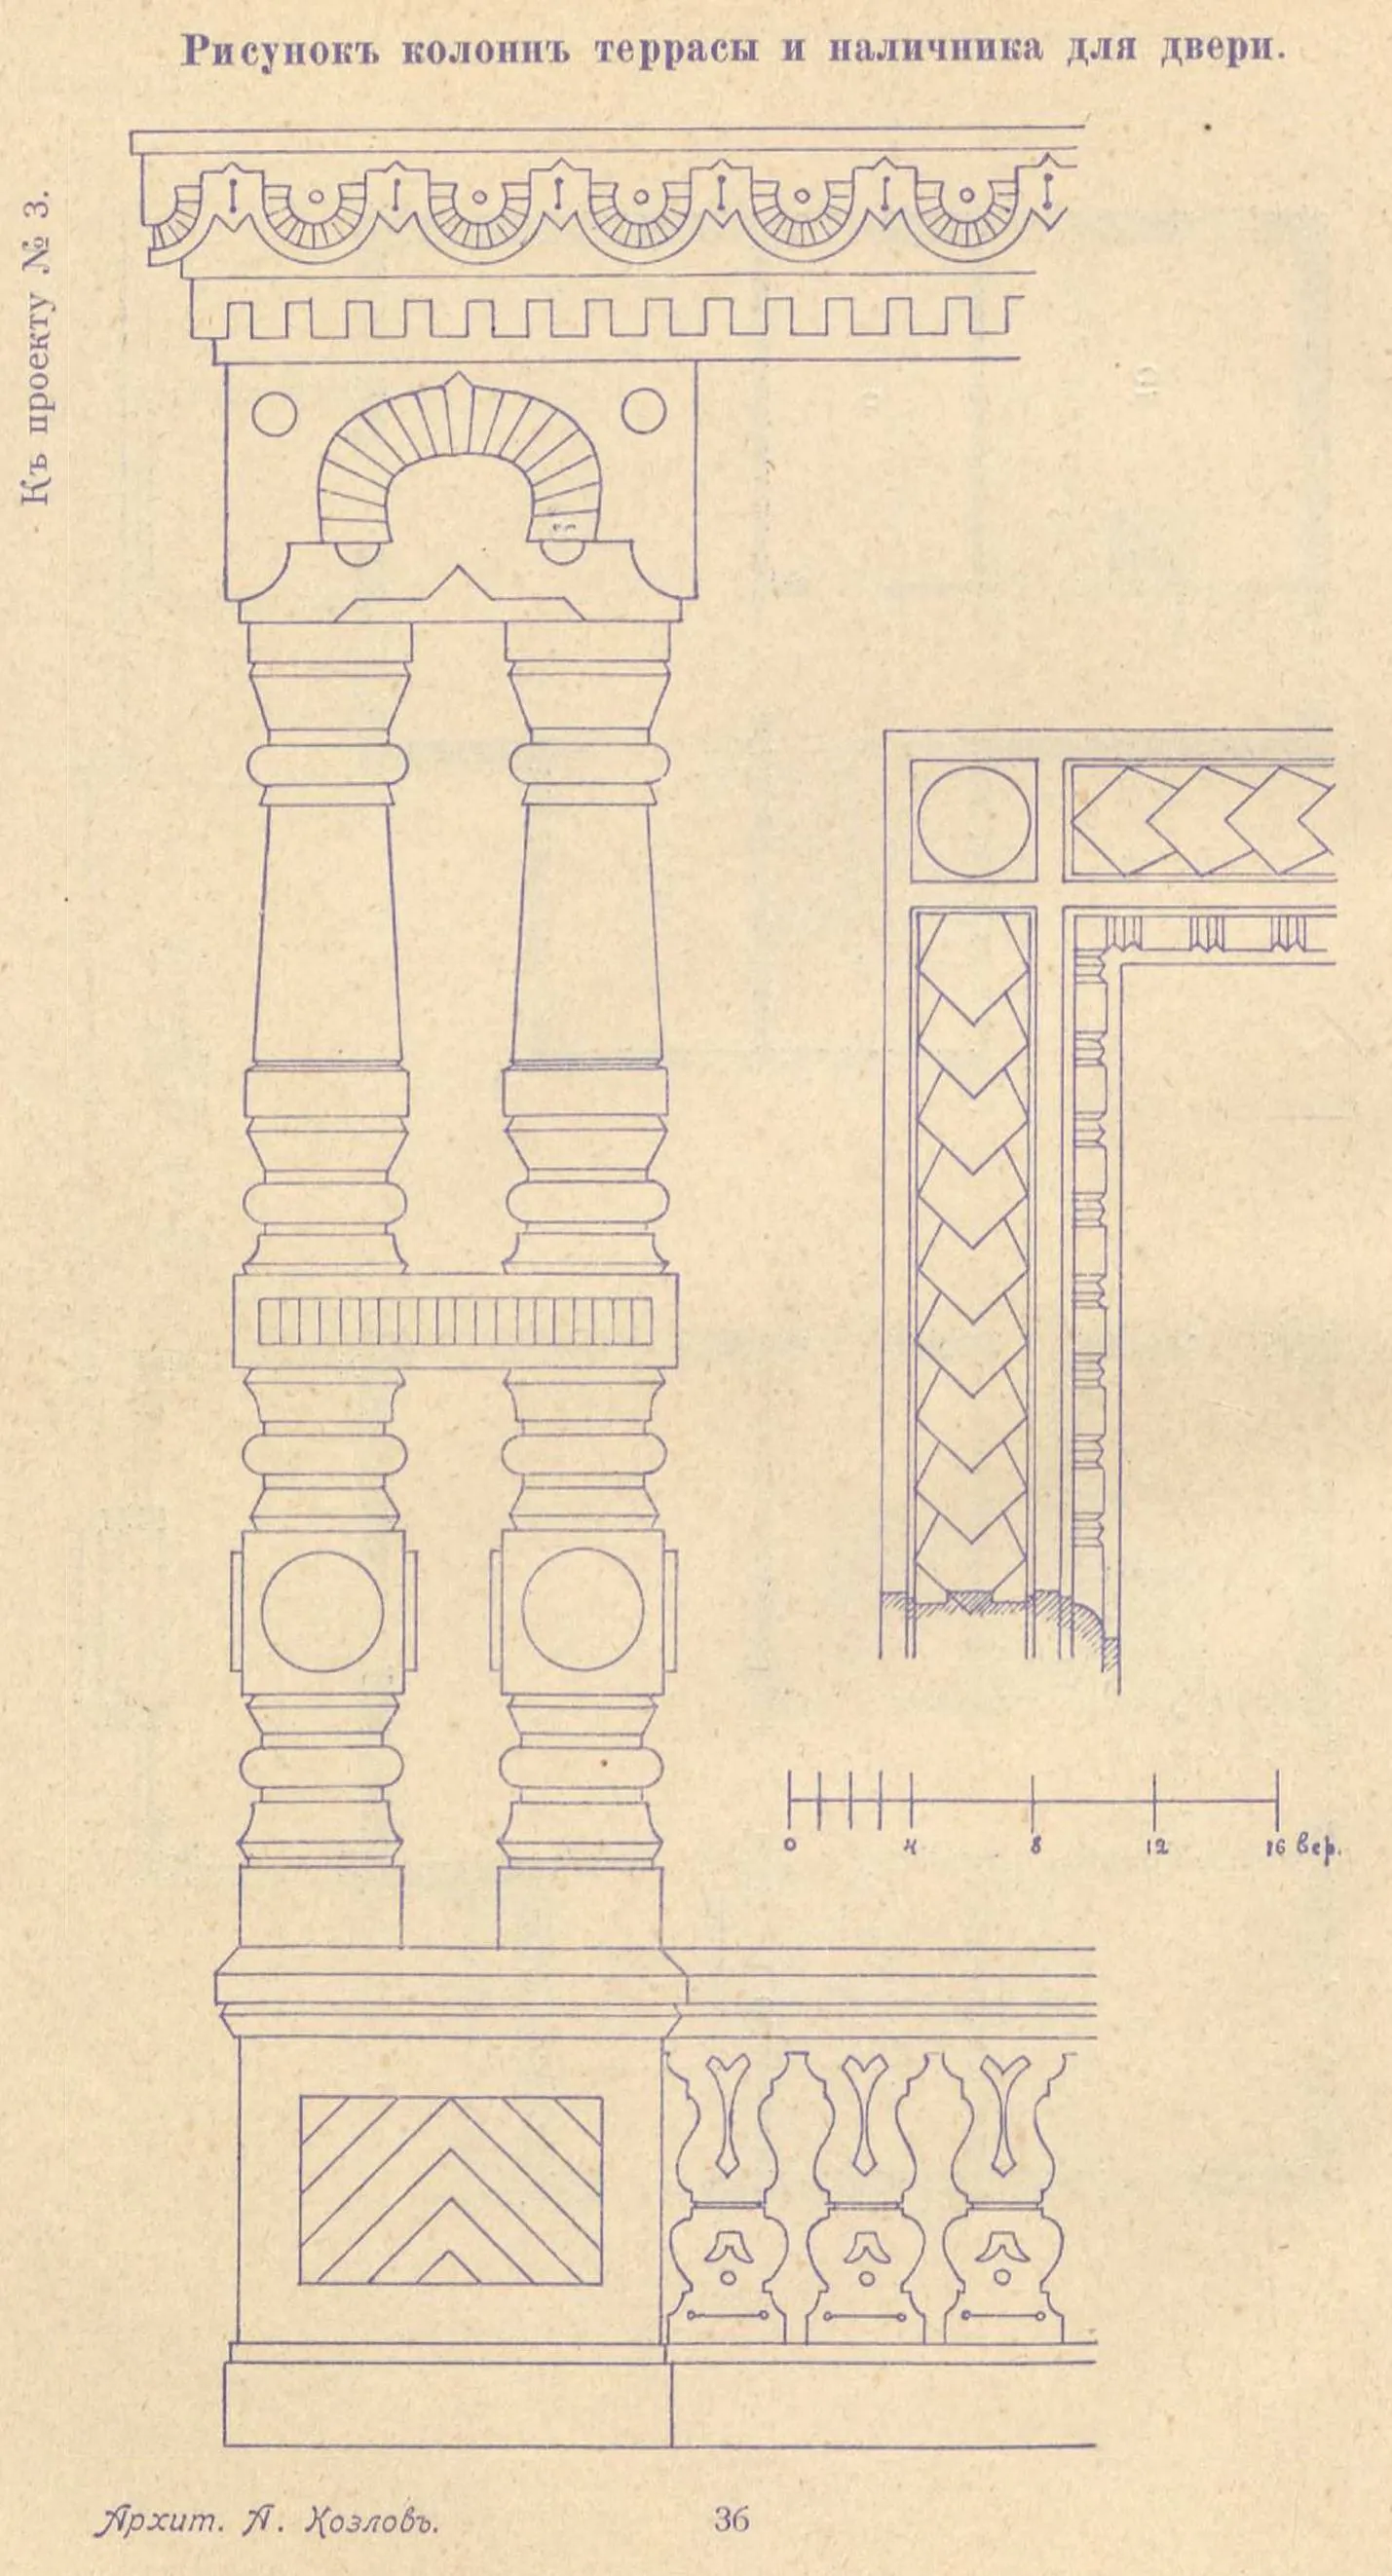 К проекту № 3. Архит. А. Козлов. Рисунок колонн террасы и наличника для двери.